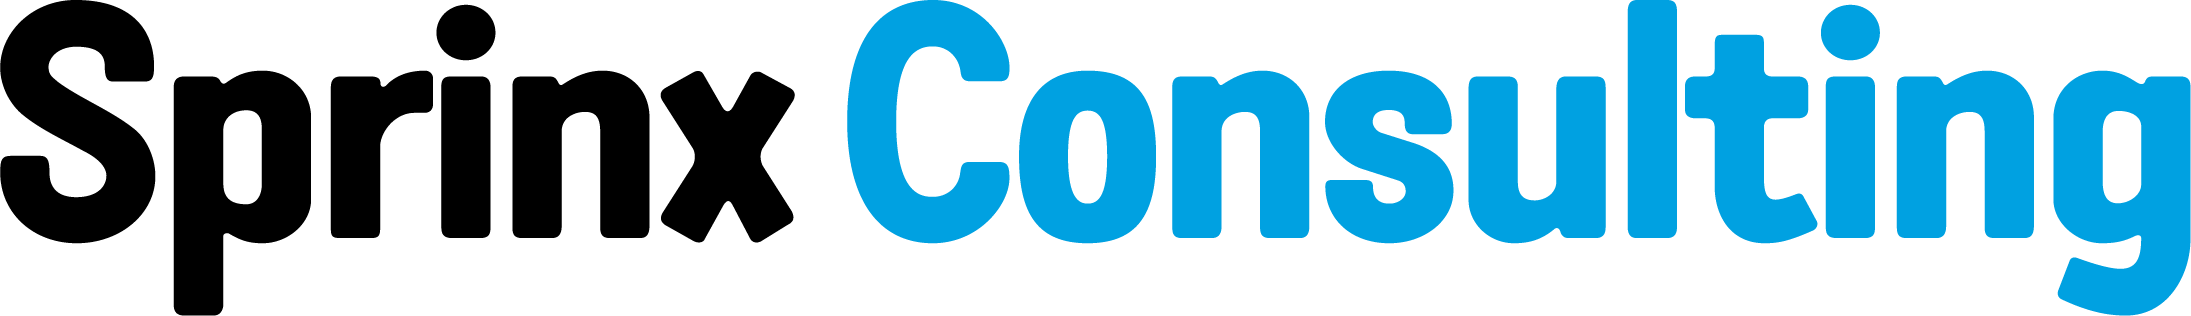 Logo Sprinx Consulting